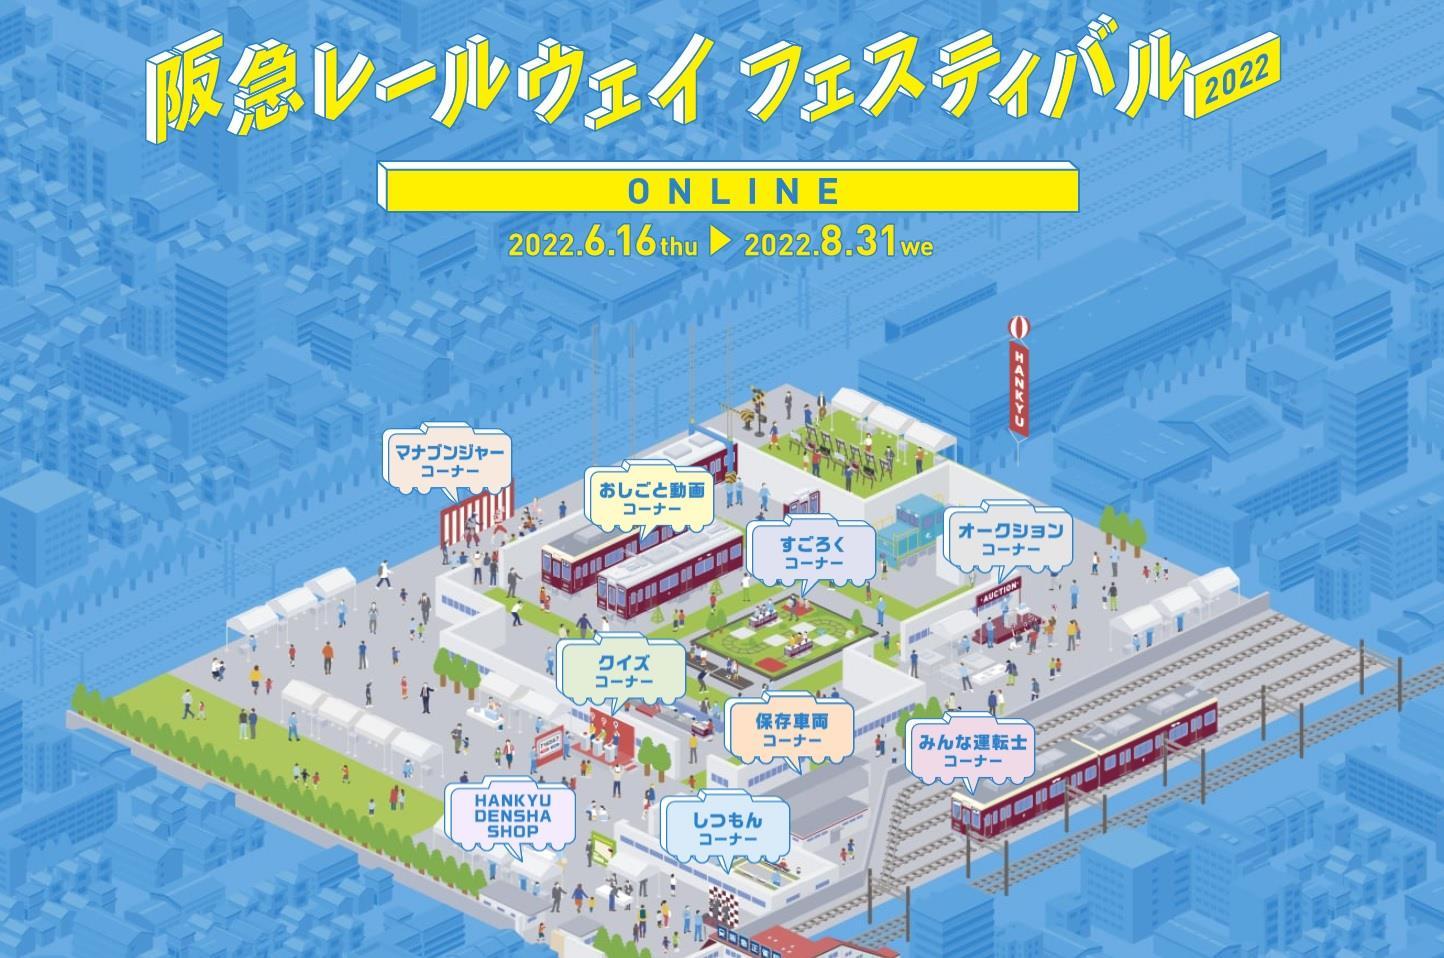 阪急レールウェイフェスティバル2022 ONLINE